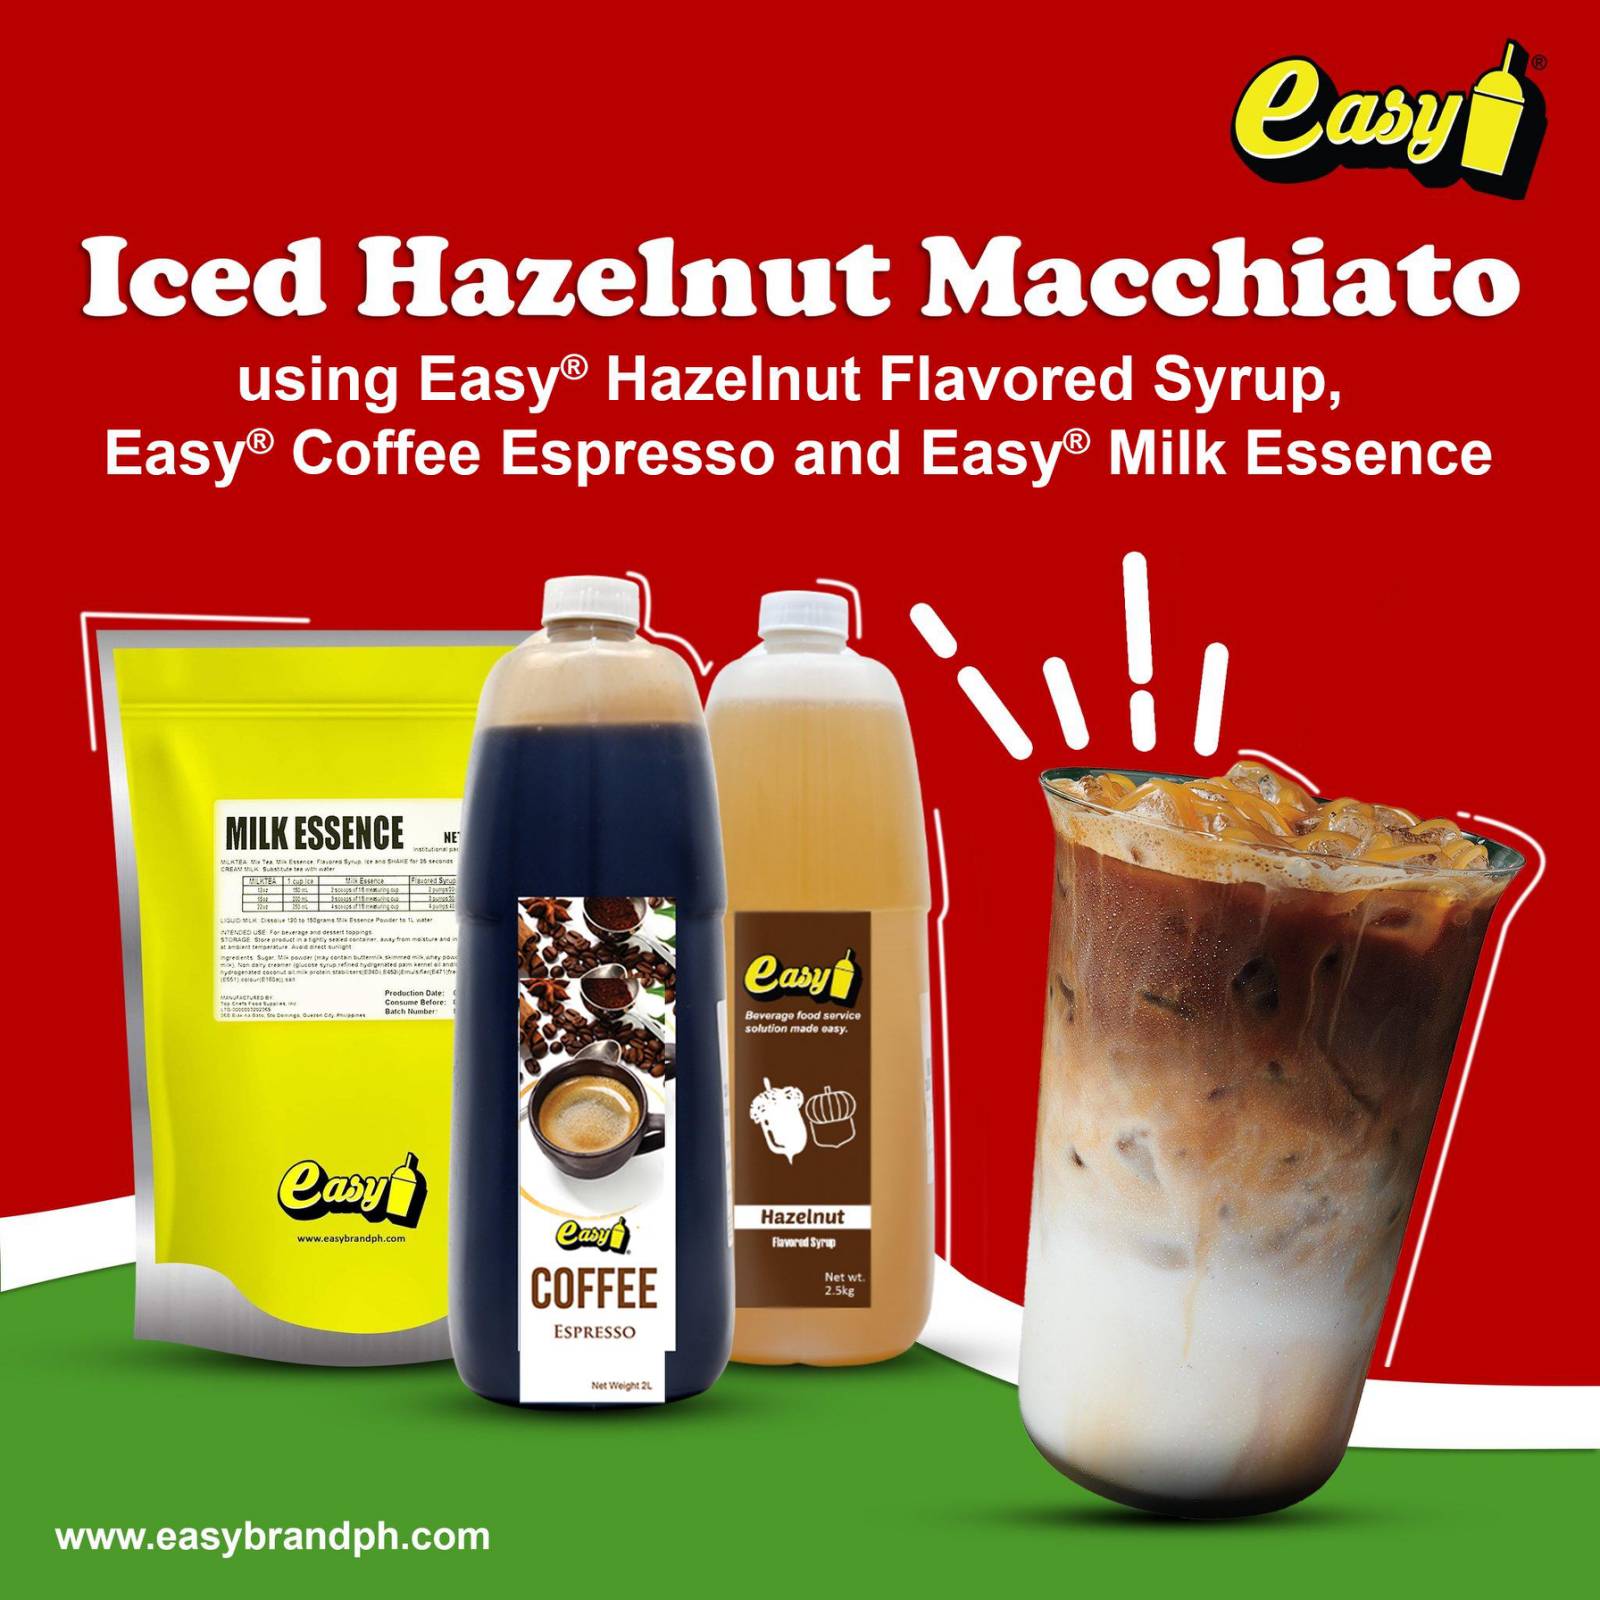 Iced Hazelnut Macchiato